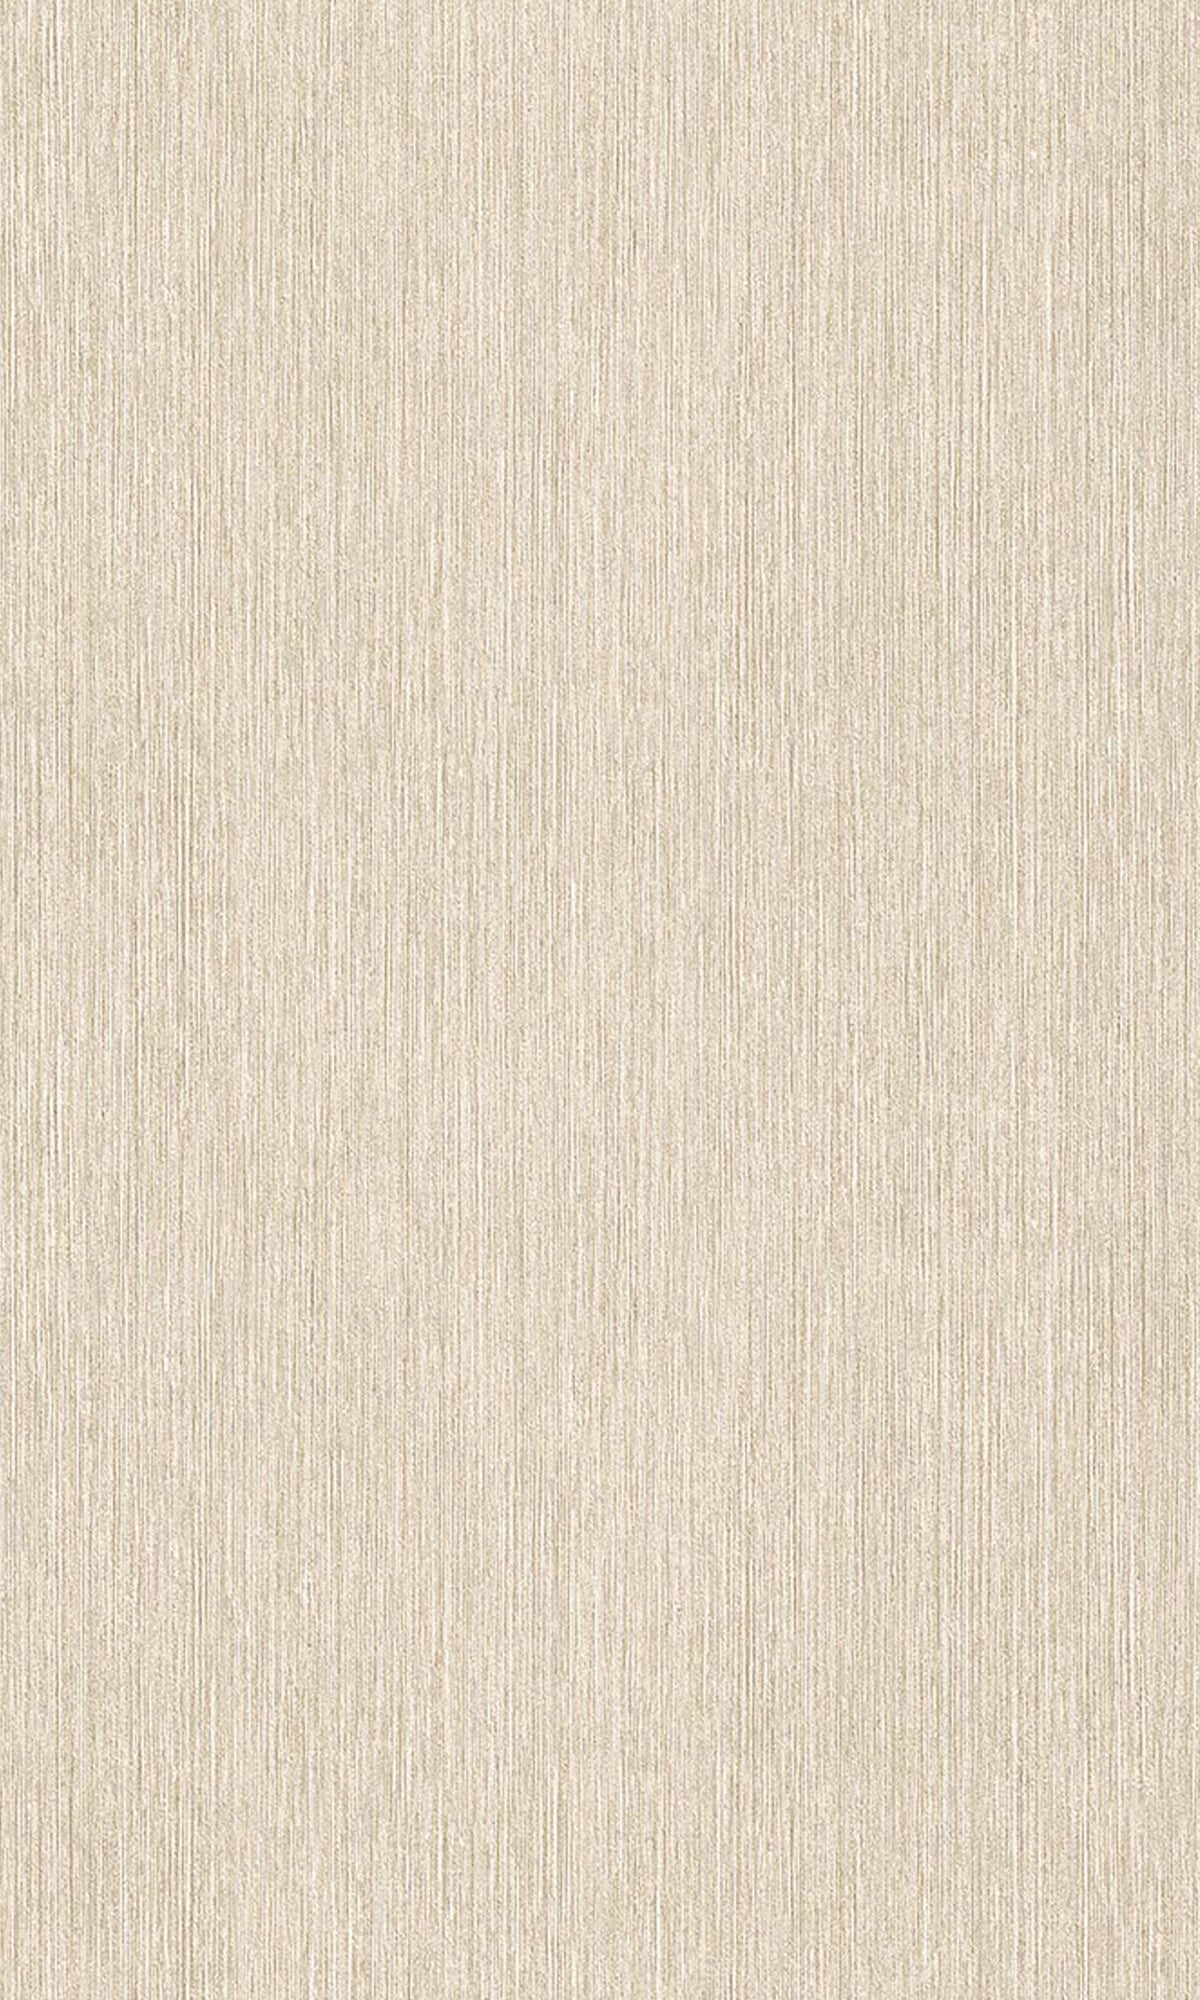 Light Beige Vertical Plain Textured Wallpaper R9281